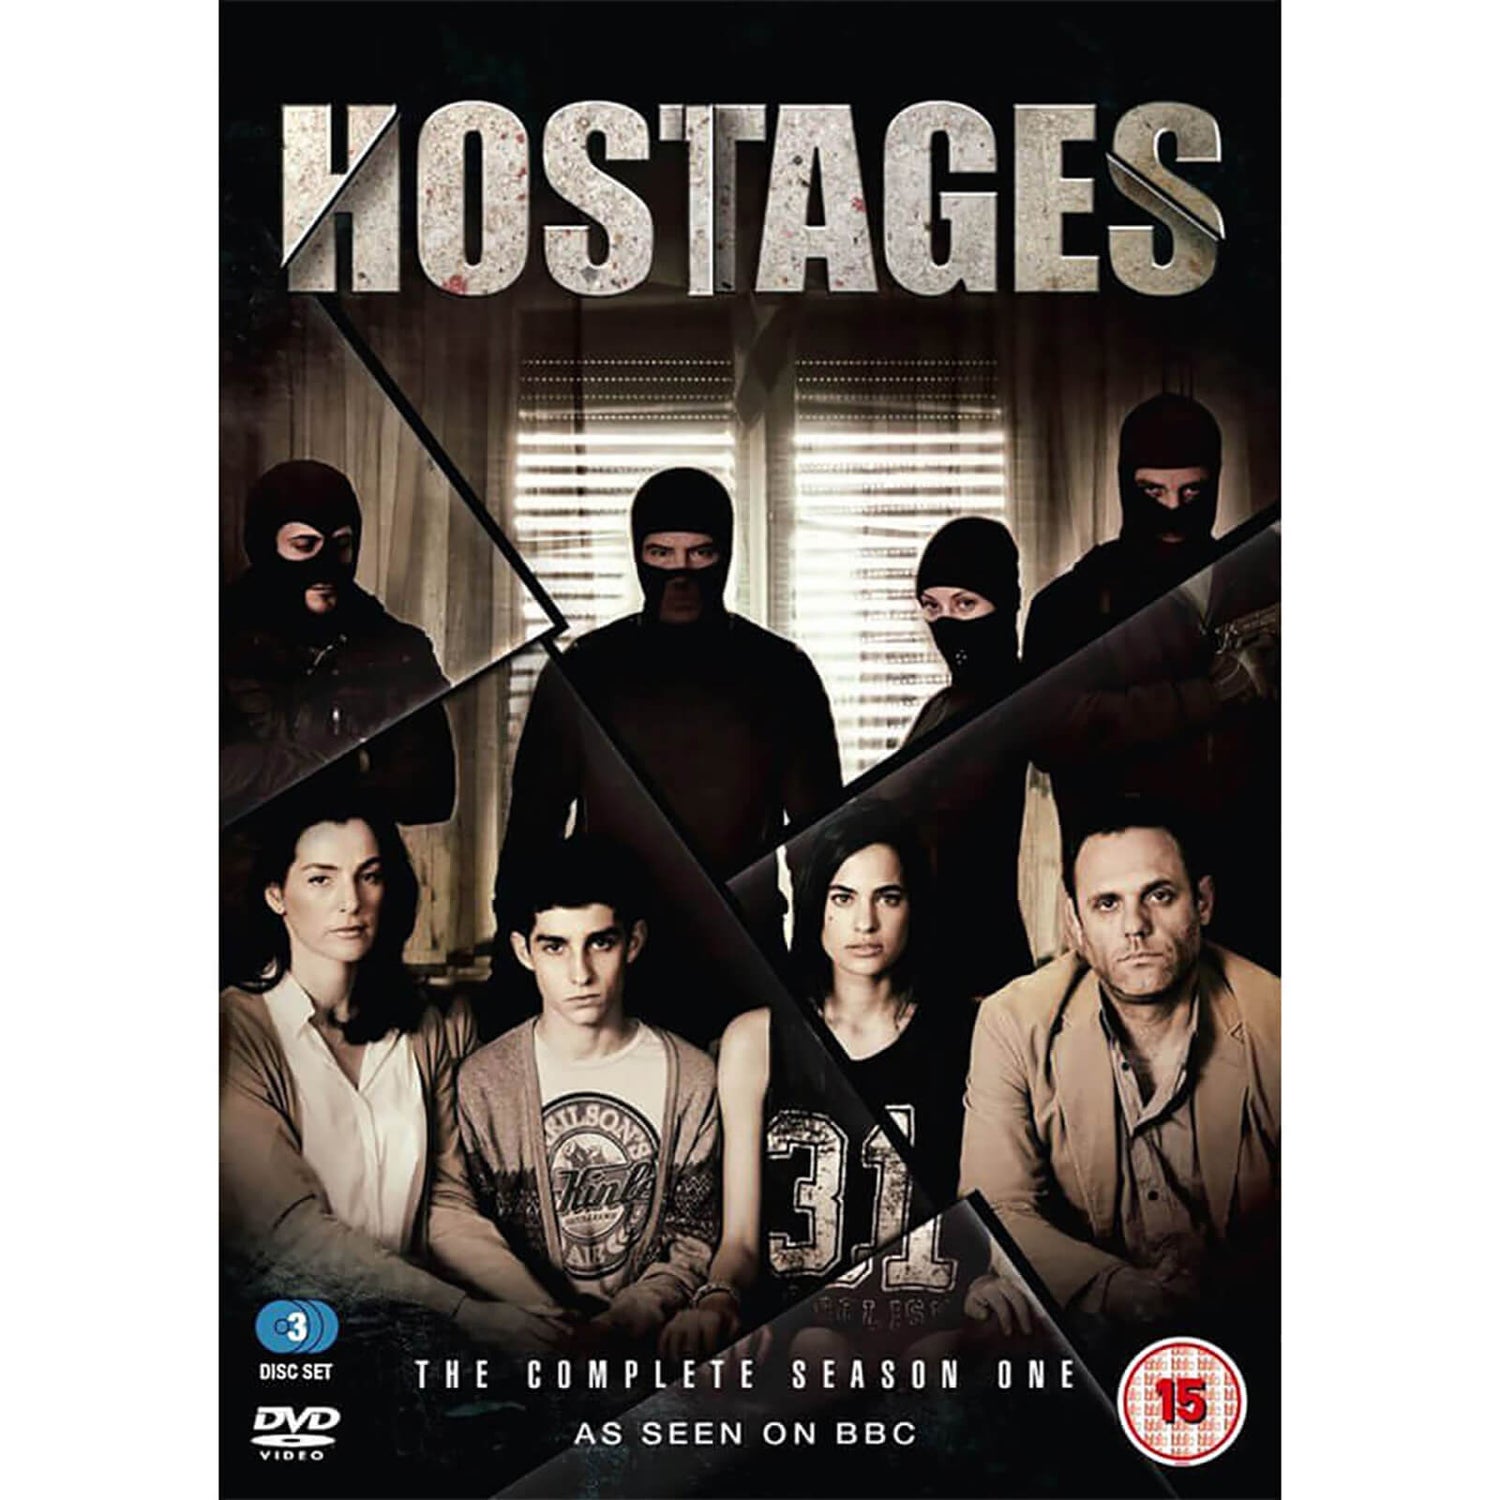 Hostages - Season 1